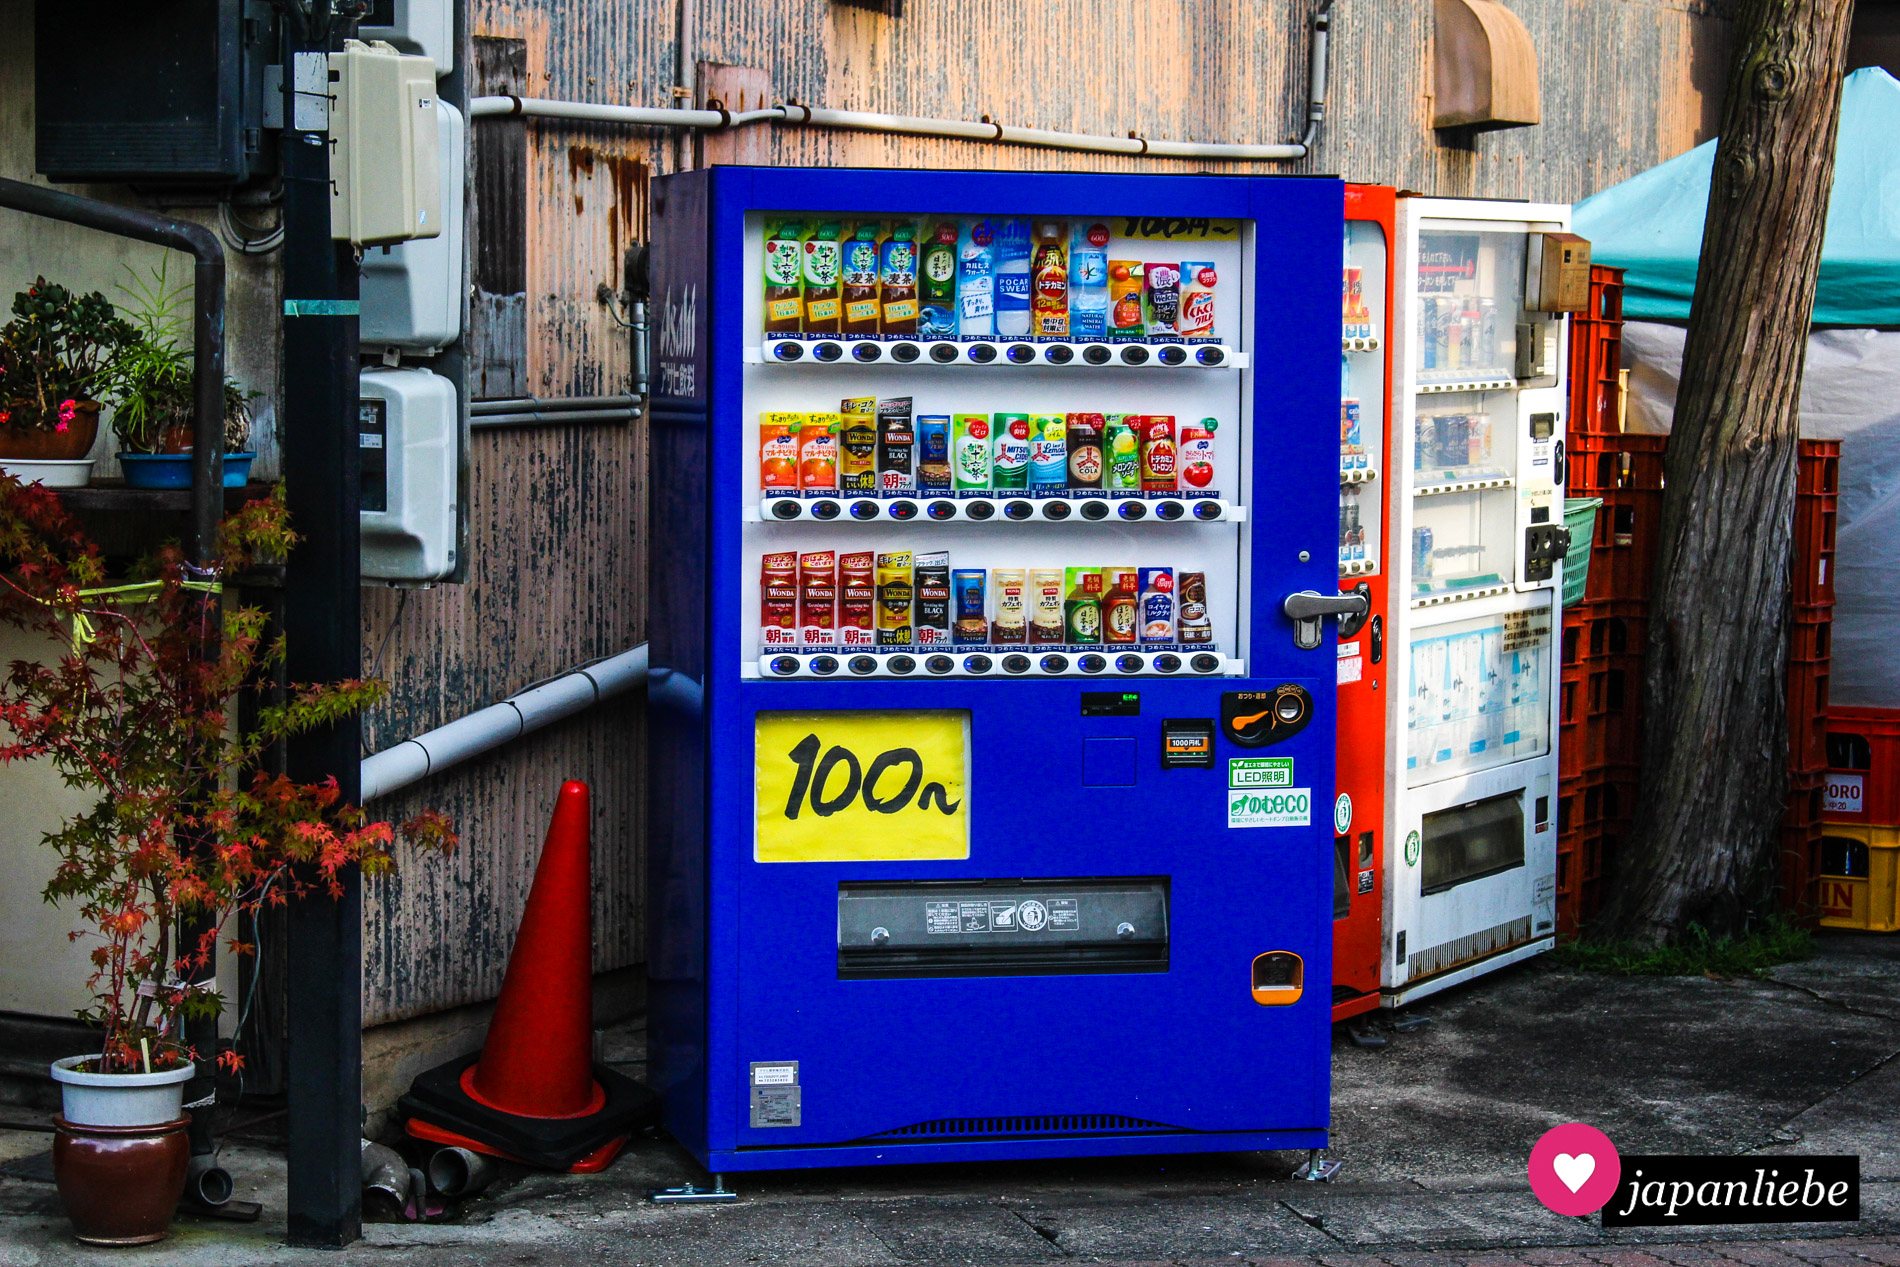 Für nur 100 Yen pro Flasche kann man sich an diesem Getränkeautomaten in Toyokawa eine Erfrischung ziehen.